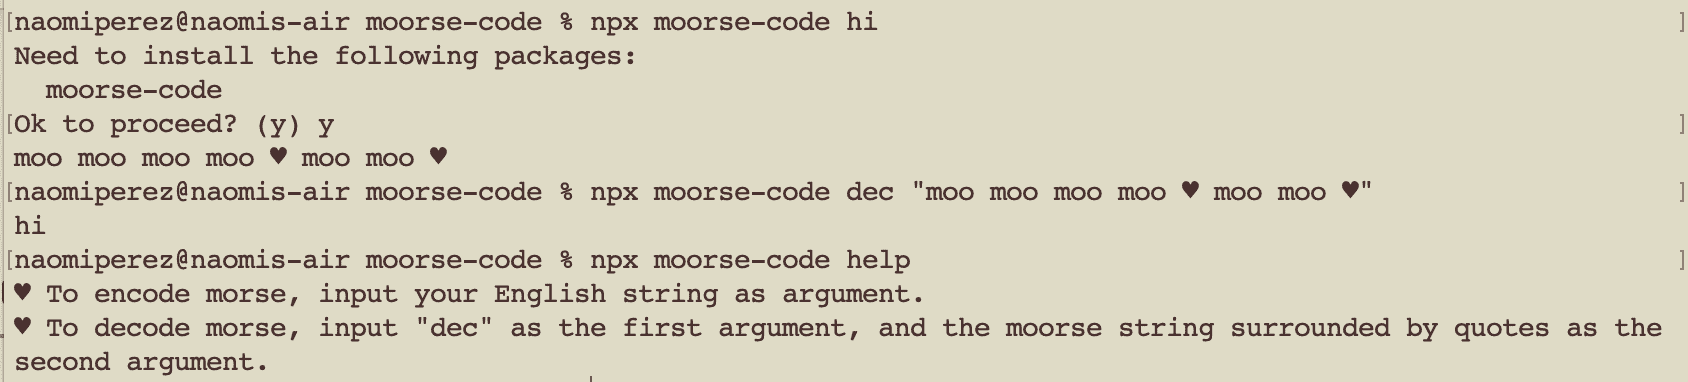 Moorse Code NPX Module Example